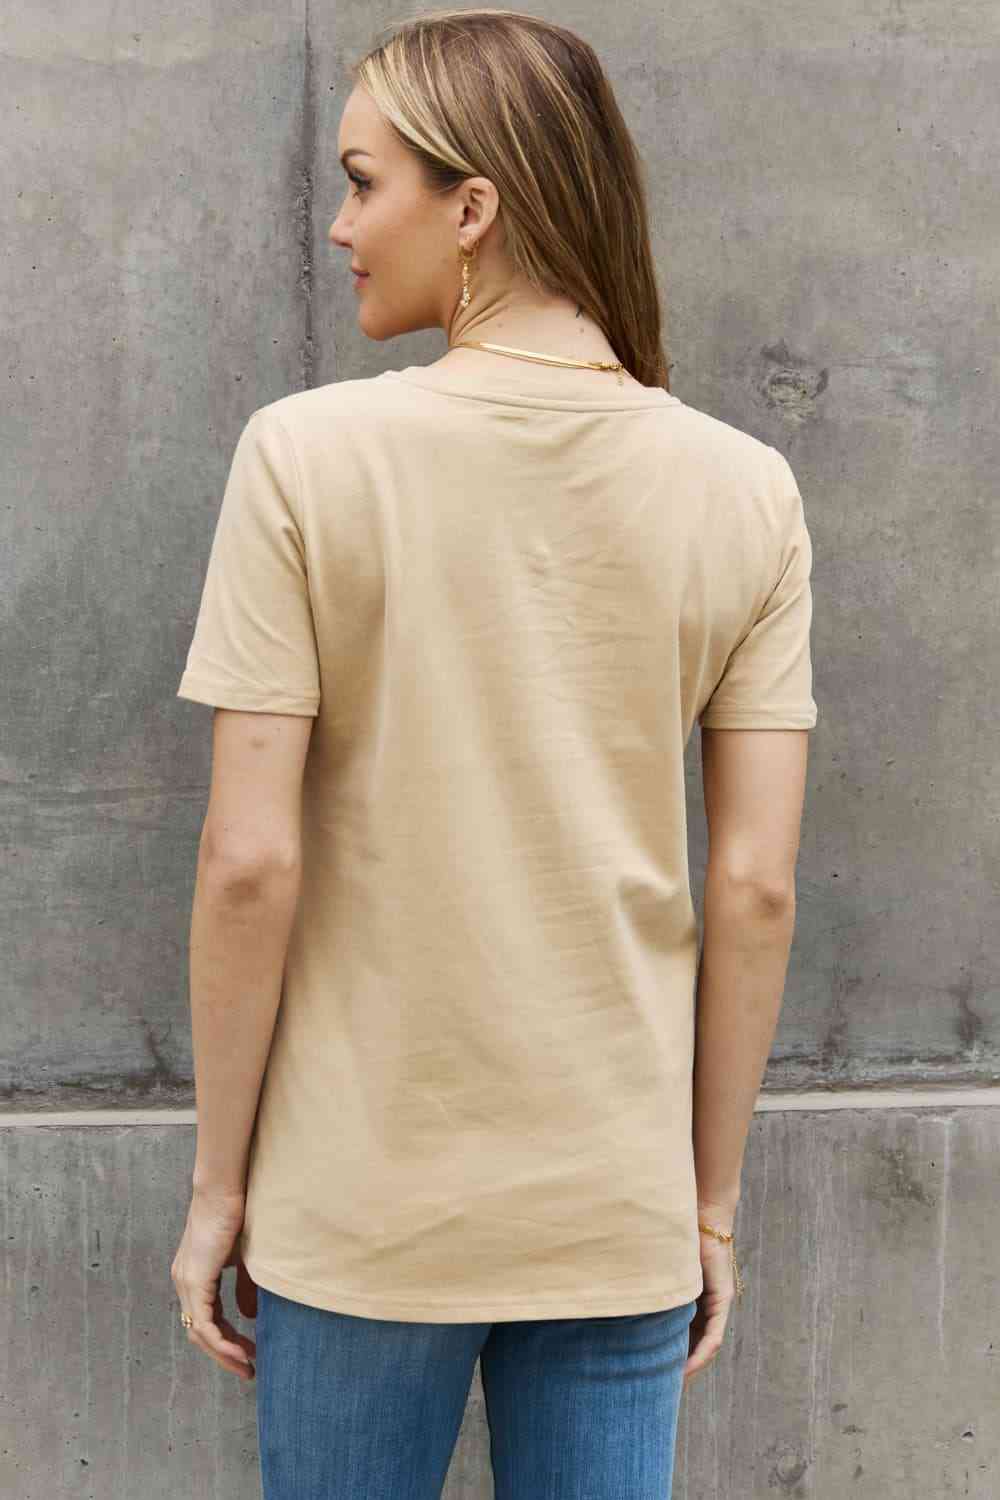 Camiseta de algodón con estampado de girasoles de tamaño completo de Simply Love